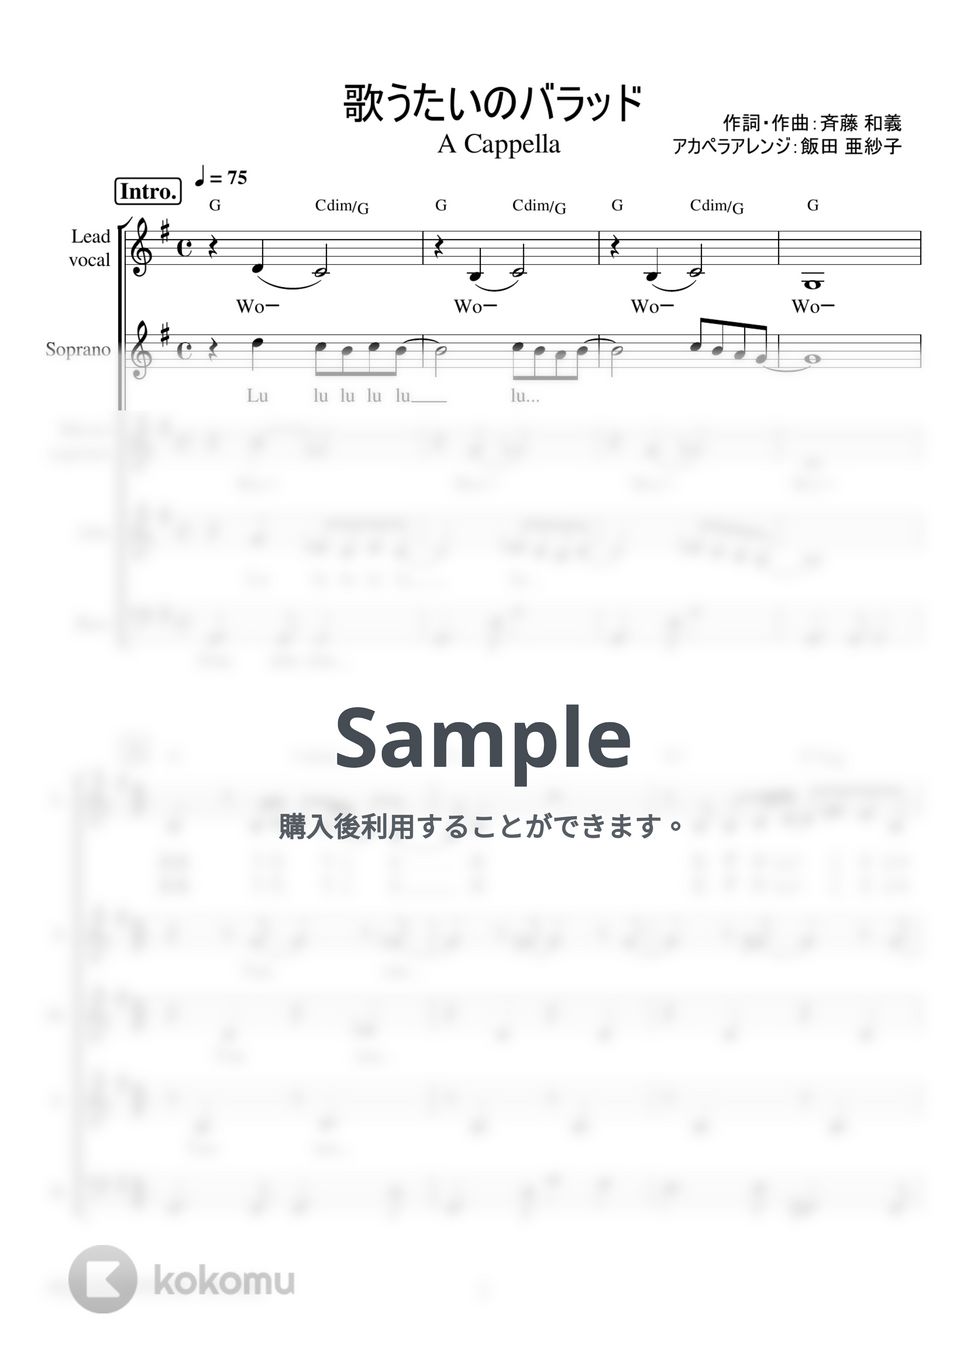 斉藤和義 - 歌うたいのバラッド (アカペラ楽譜♪５声ボイパなし) by 飯田 亜紗子